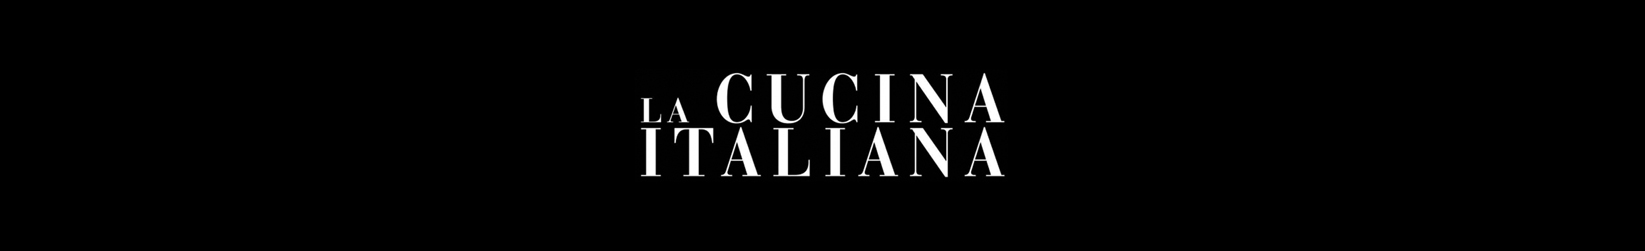 La Cucina Italiana | Studio Pastina | March 2017